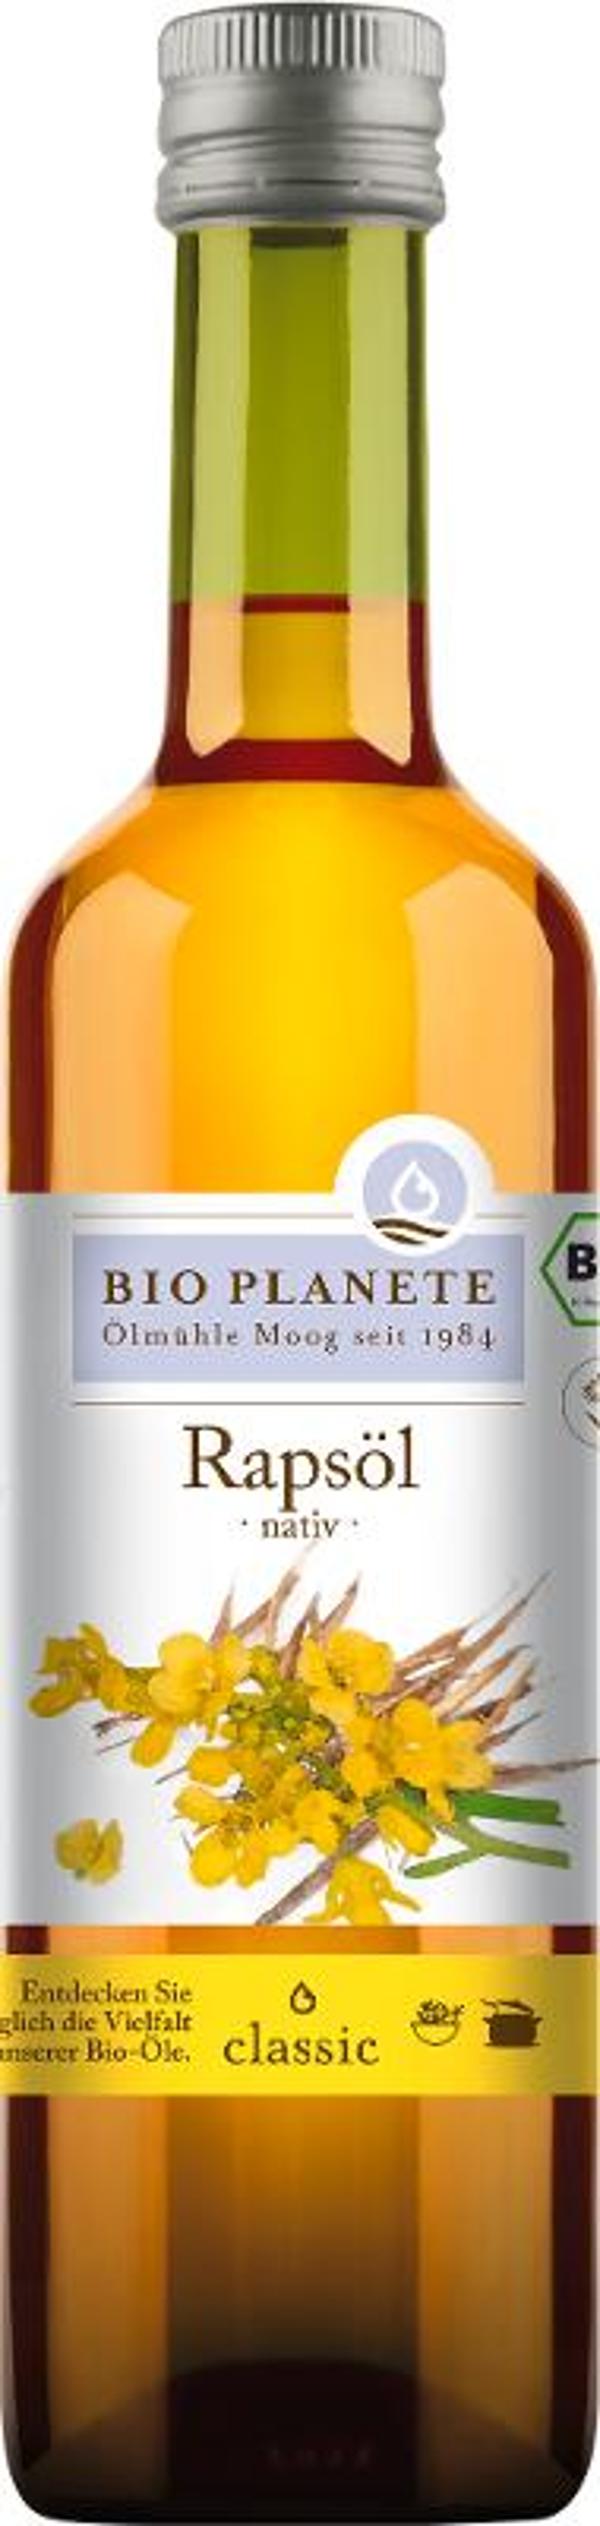 Produktfoto zu Rapsöl nativ aus deutscher Herkunft 0,5l BioPlanete